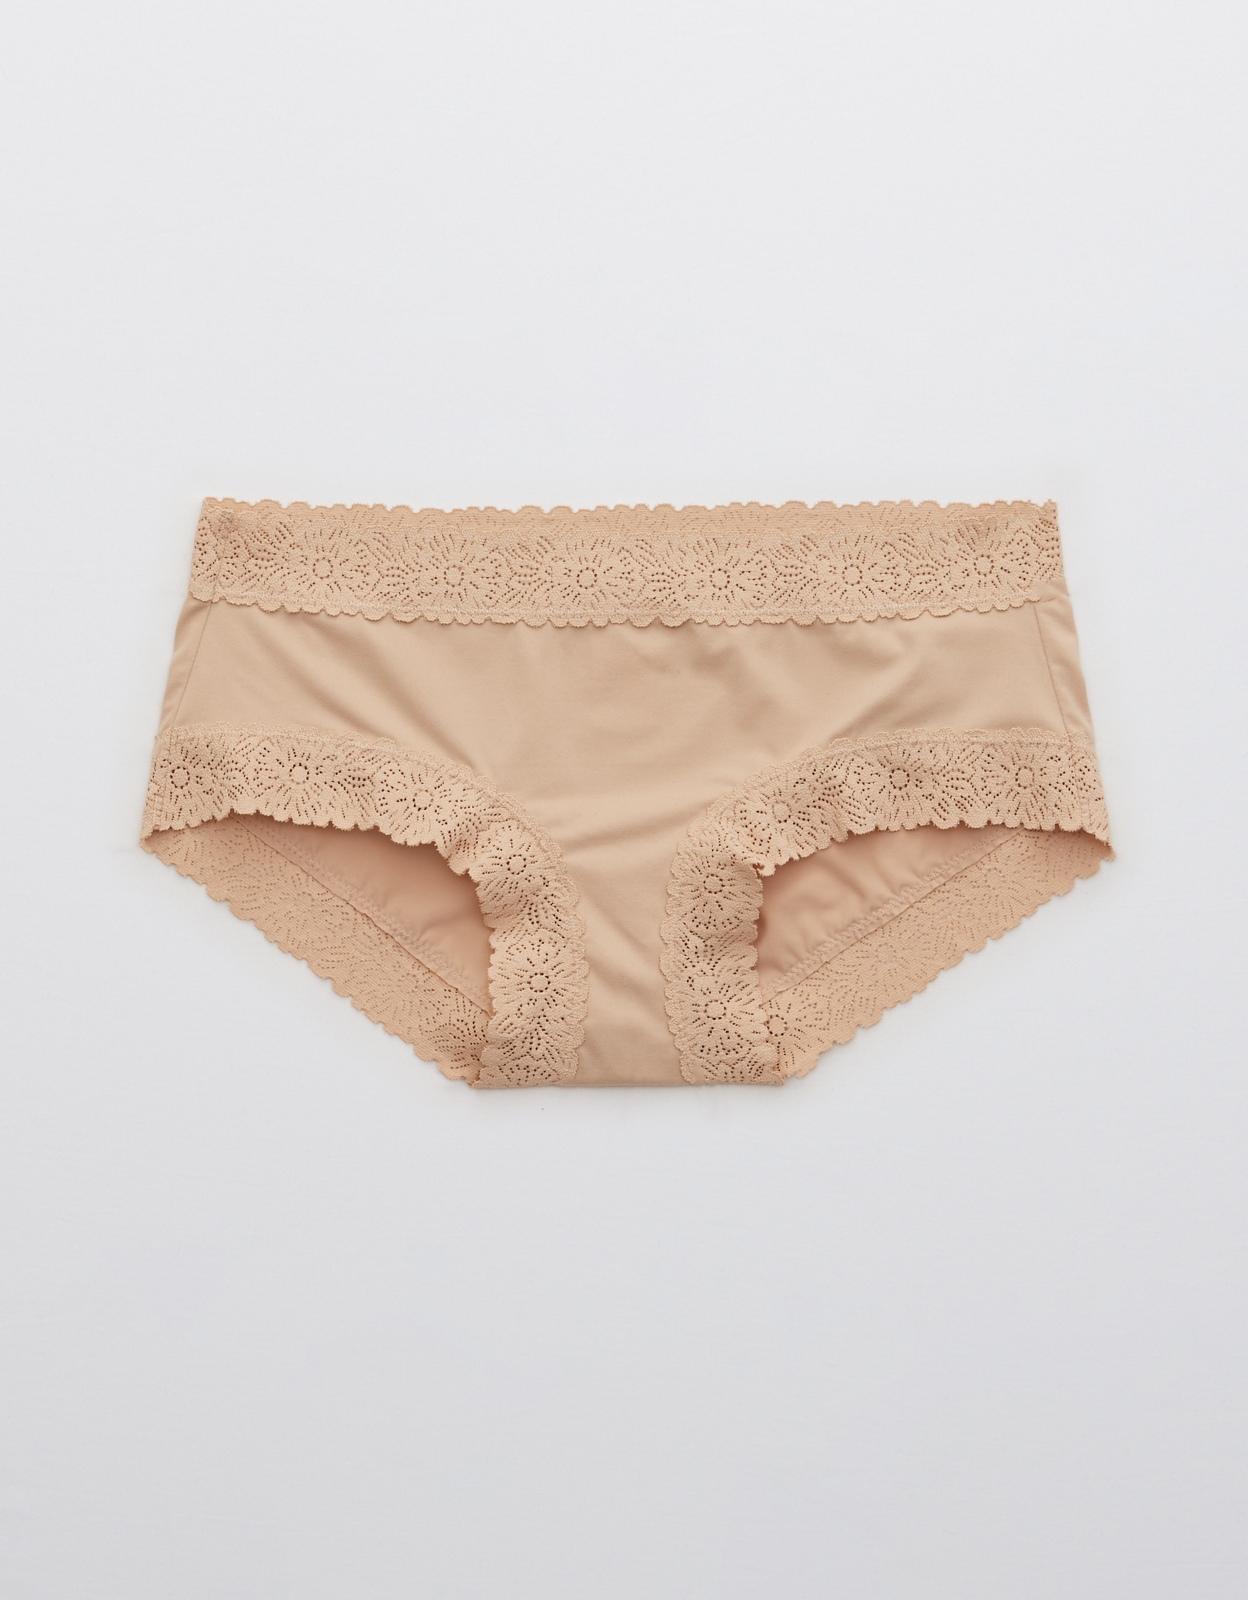 Buy Aerie Sunnie Blossom Lace Boybrief Underwear online